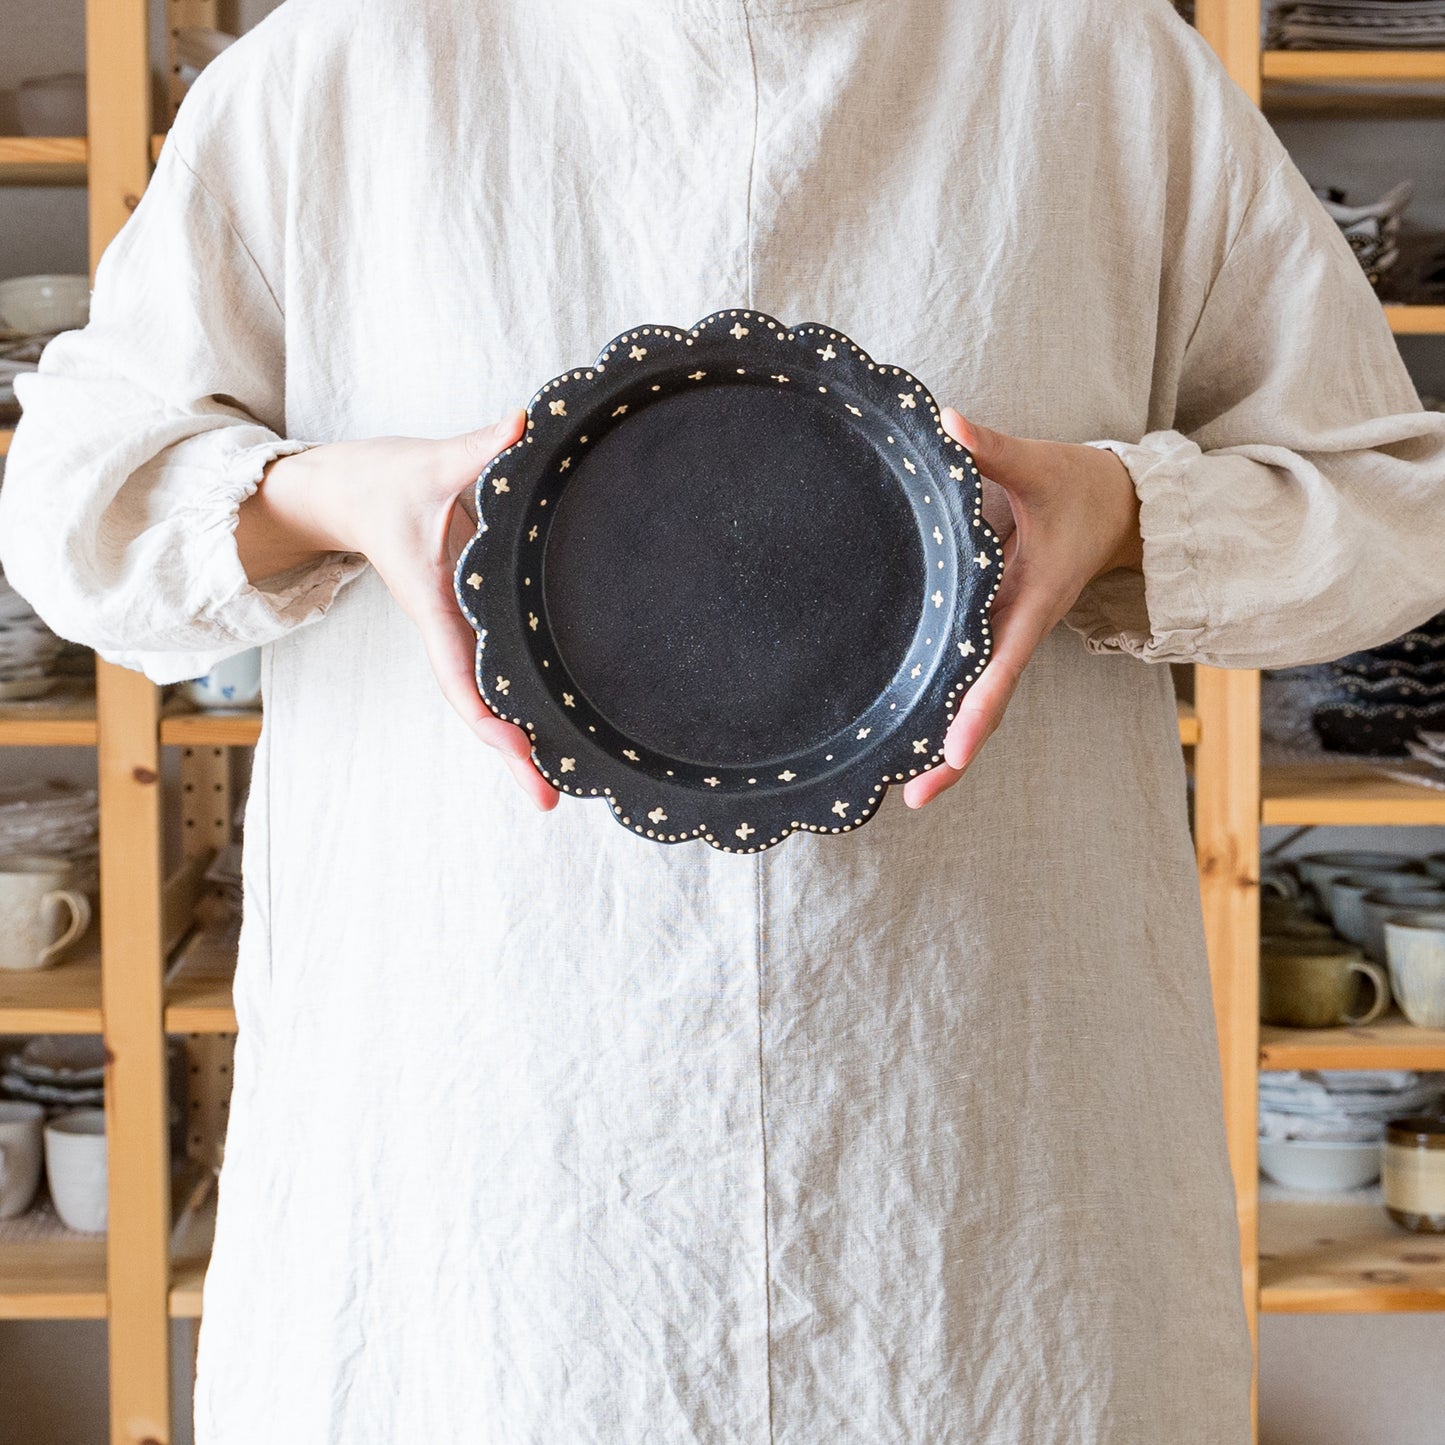 温かみのある黒と可愛い模様にほっこり癒される高須愛子さんのリム輪花平皿